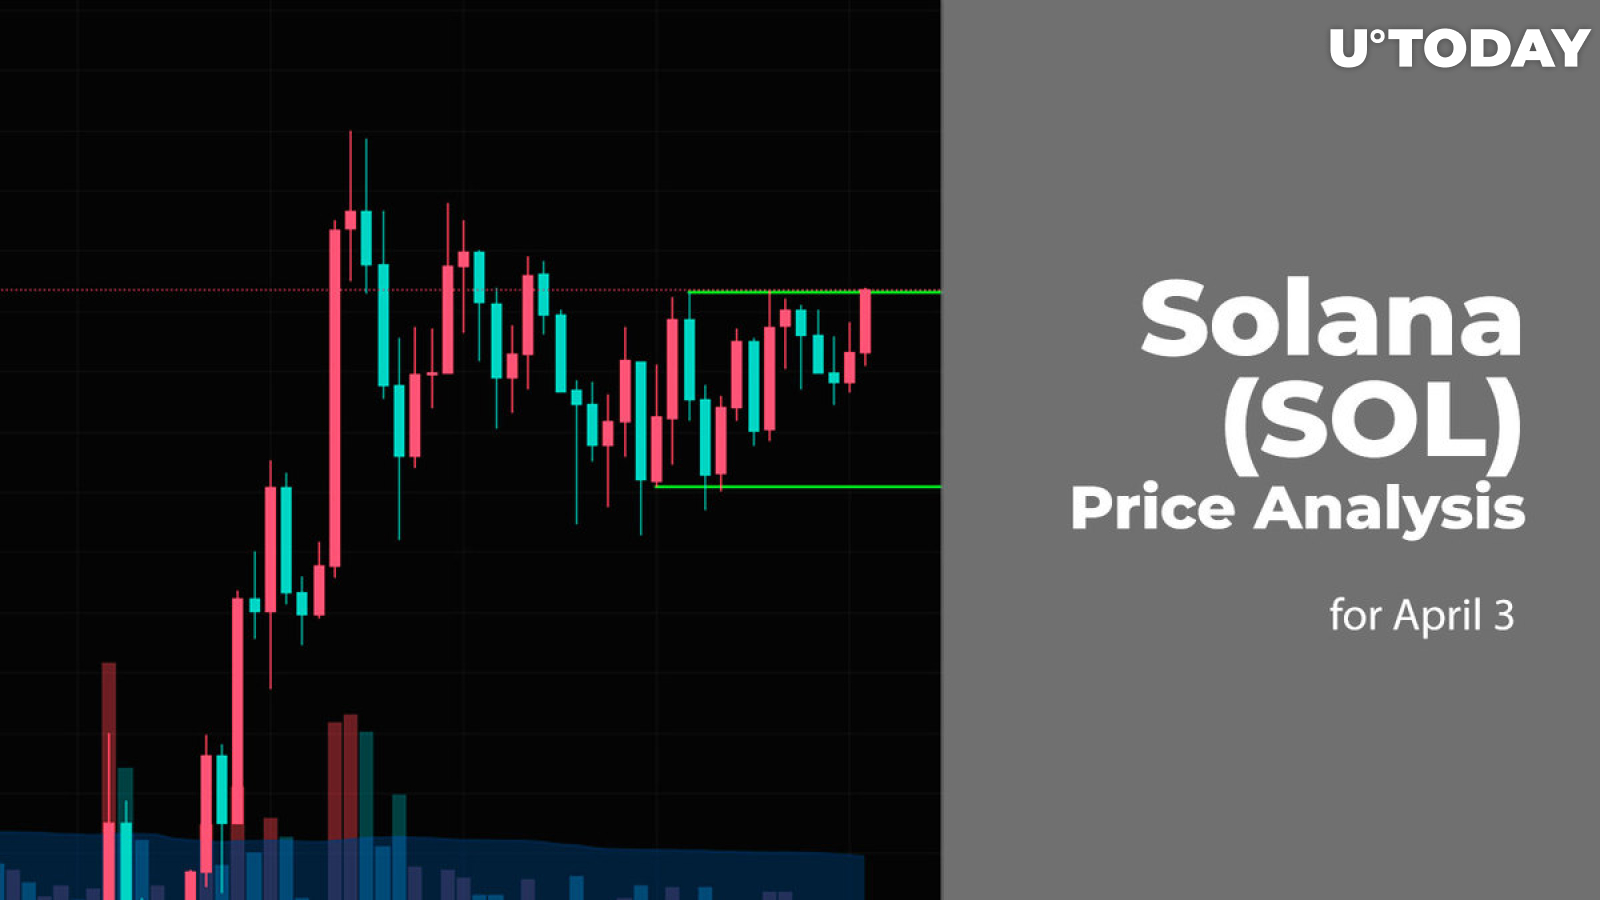 Solana (SOL) Price Prediction for April 3